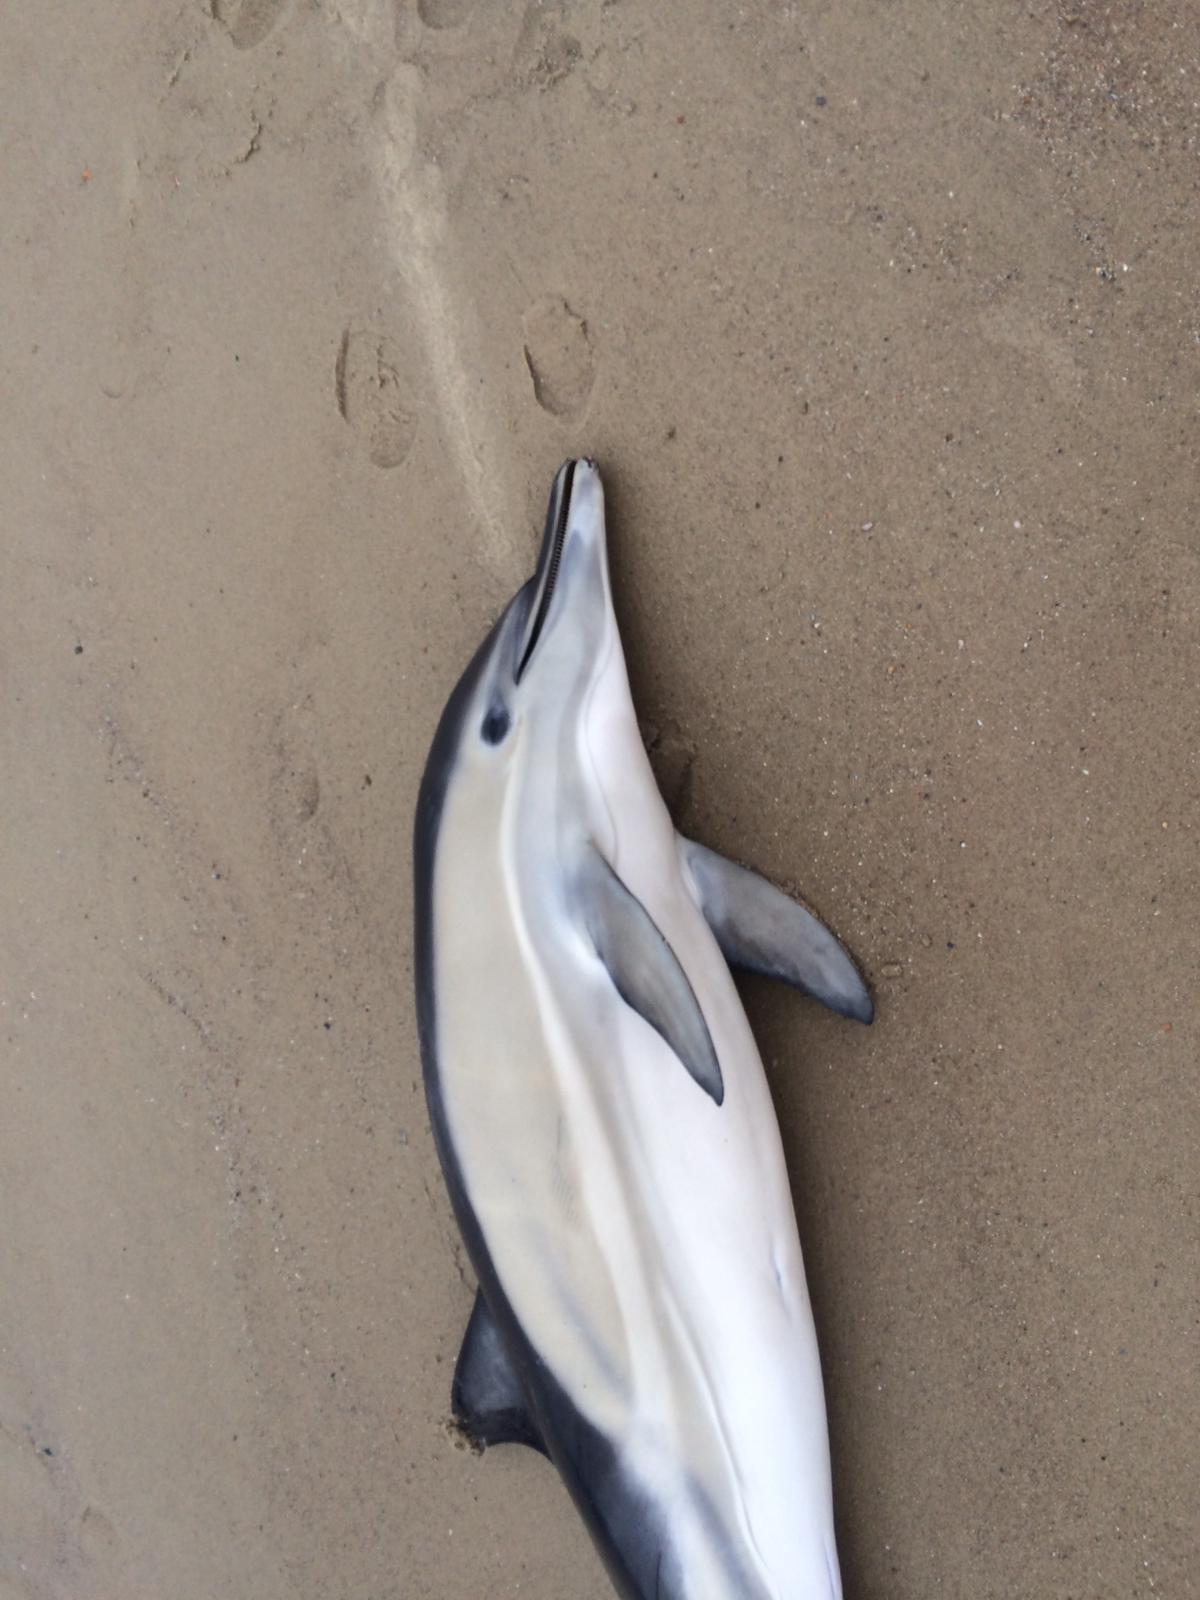 Eerste bevindingen onderzoek gestrande gewone dolfijnen